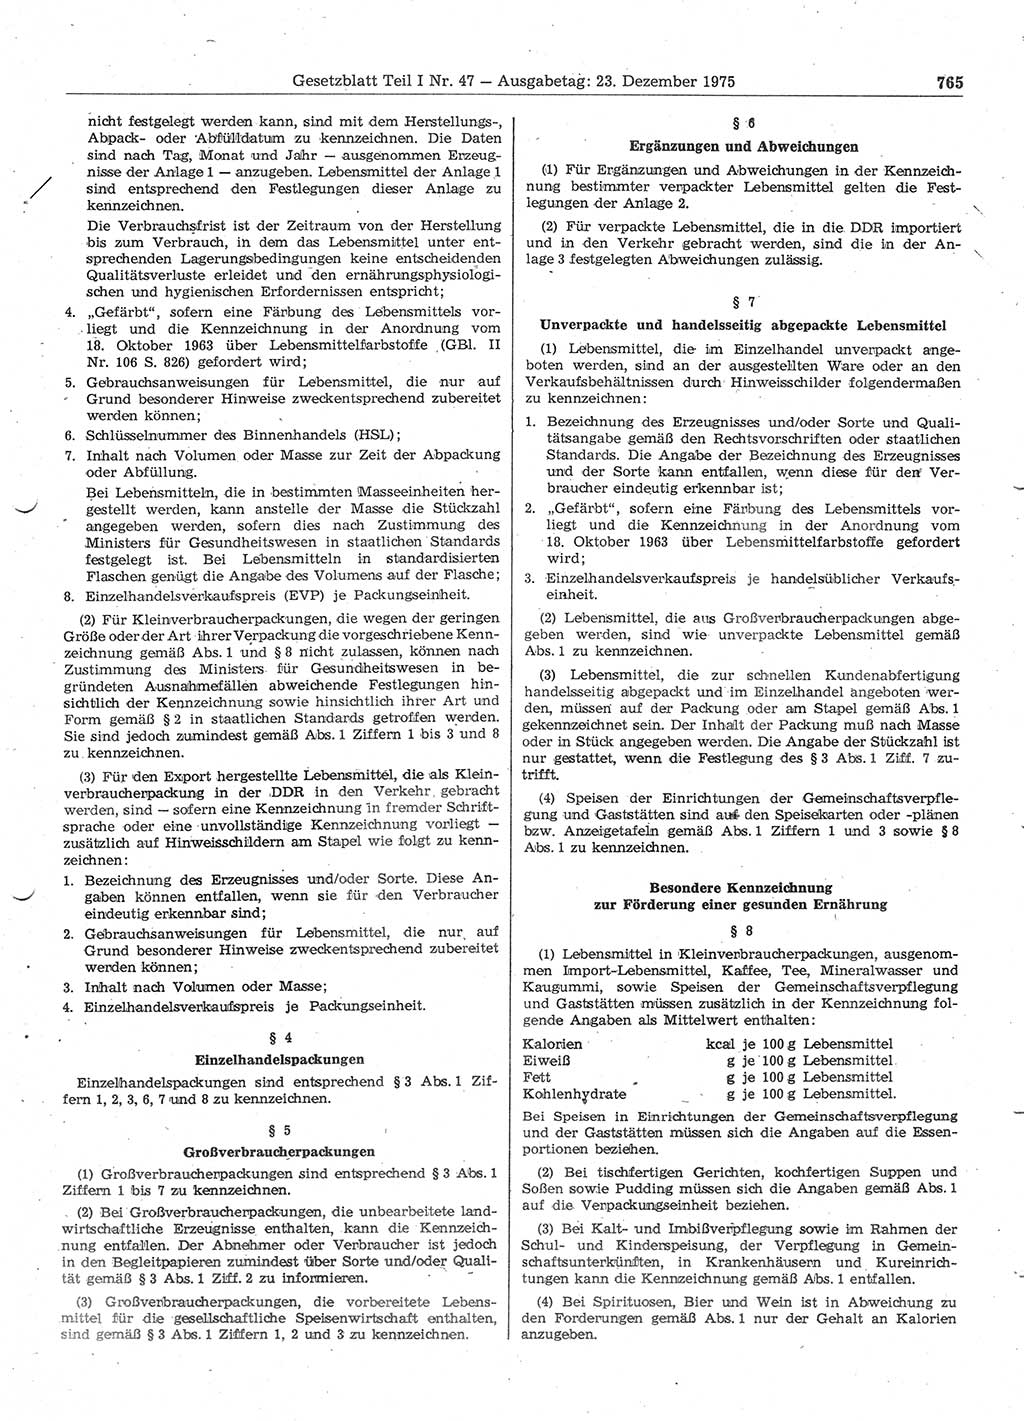 Gesetzblatt (GBl.) der Deutschen Demokratischen Republik (DDR) Teil Ⅰ 1975, Seite 765 (GBl. DDR Ⅰ 1975, S. 765)